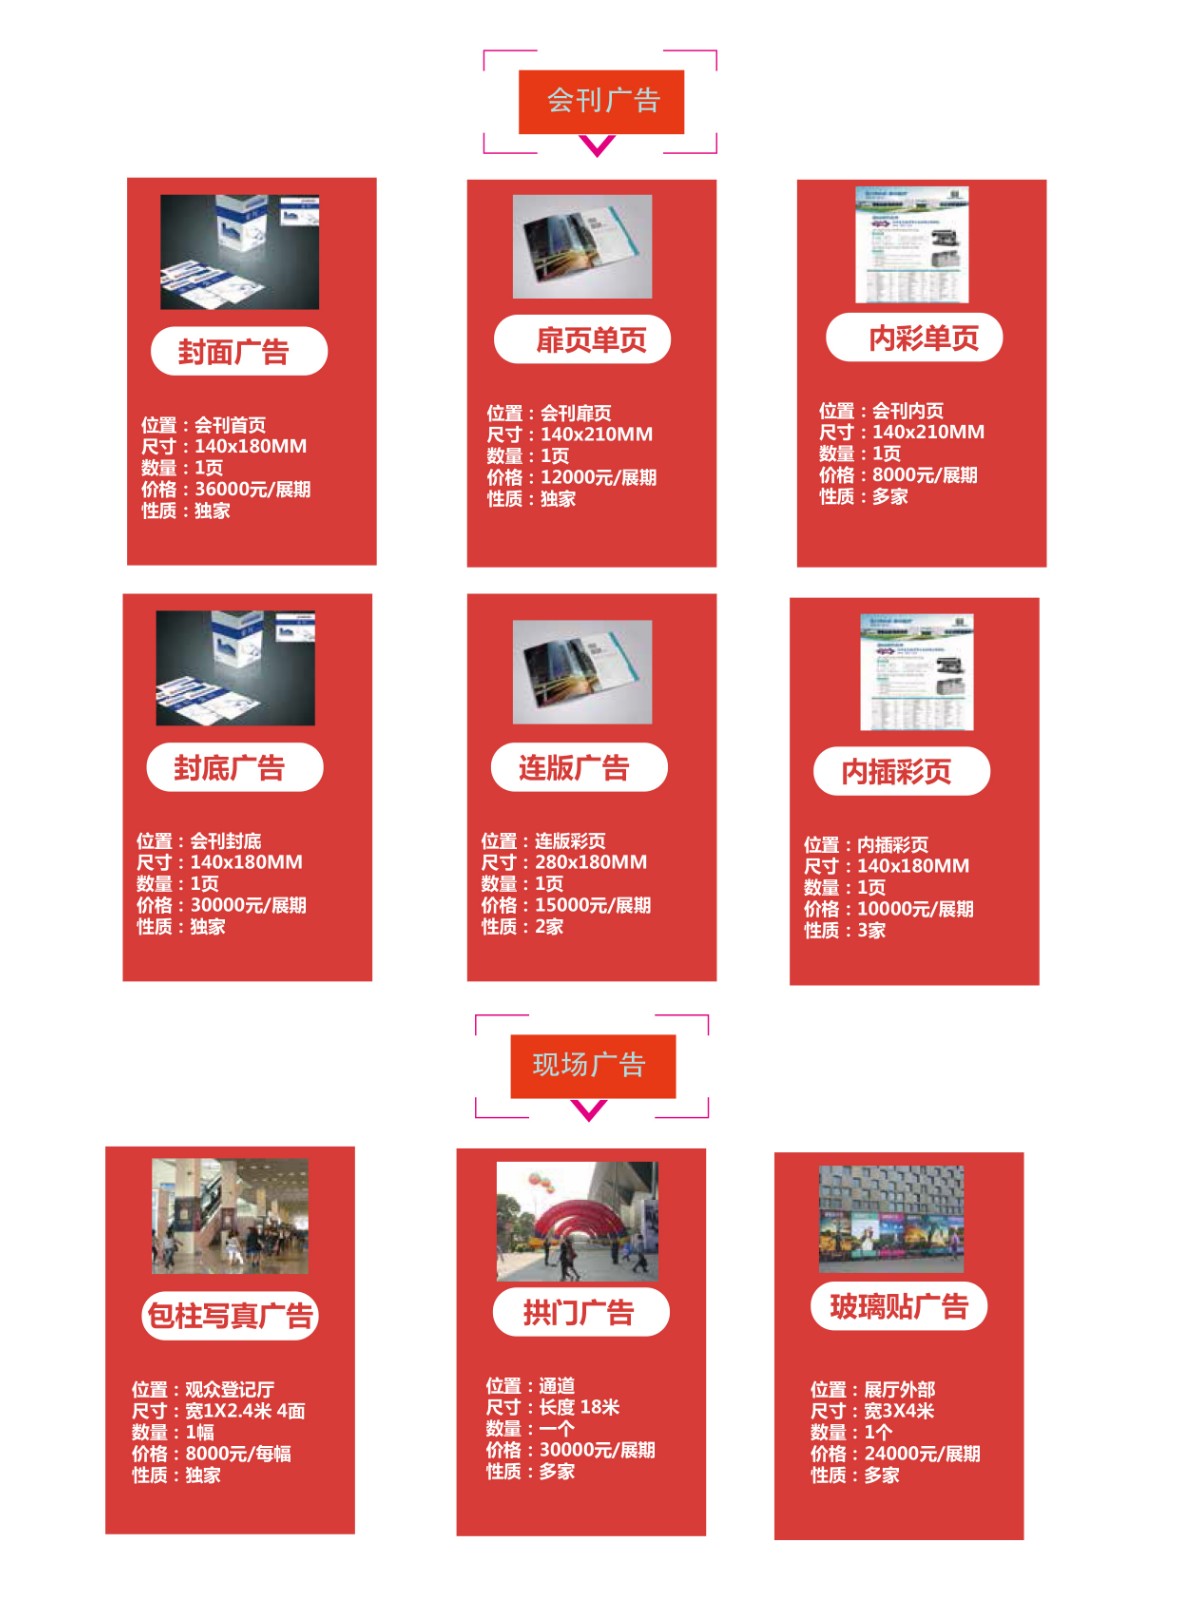 CFMH2021深圳国际家庭医疗健康用品展览会现场广告